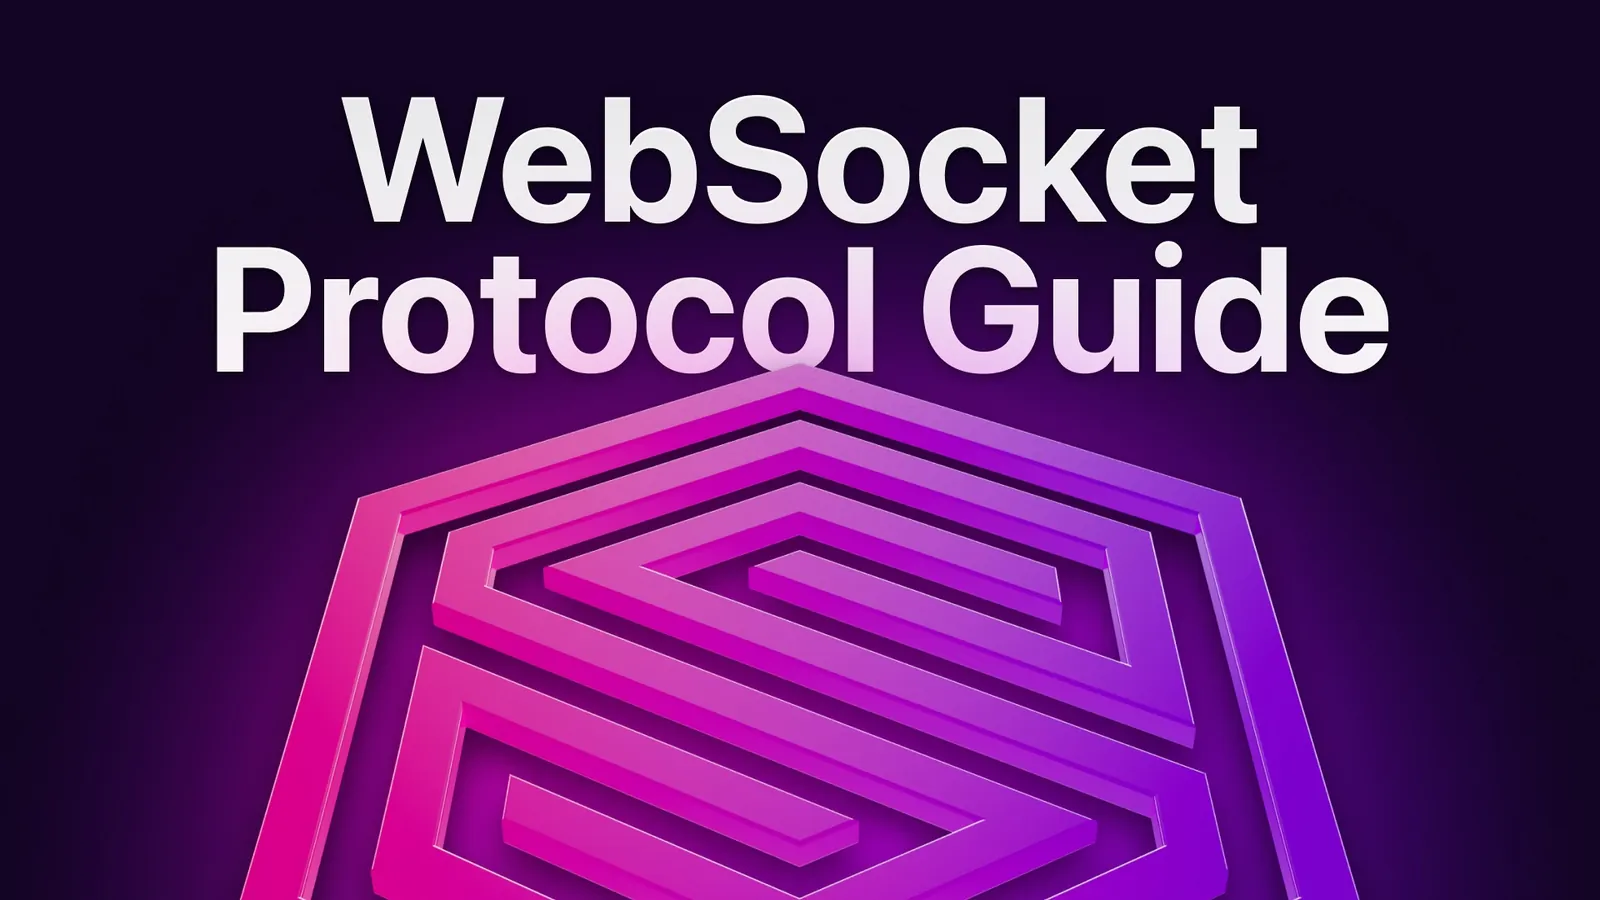 WebSocket Protocol Guide